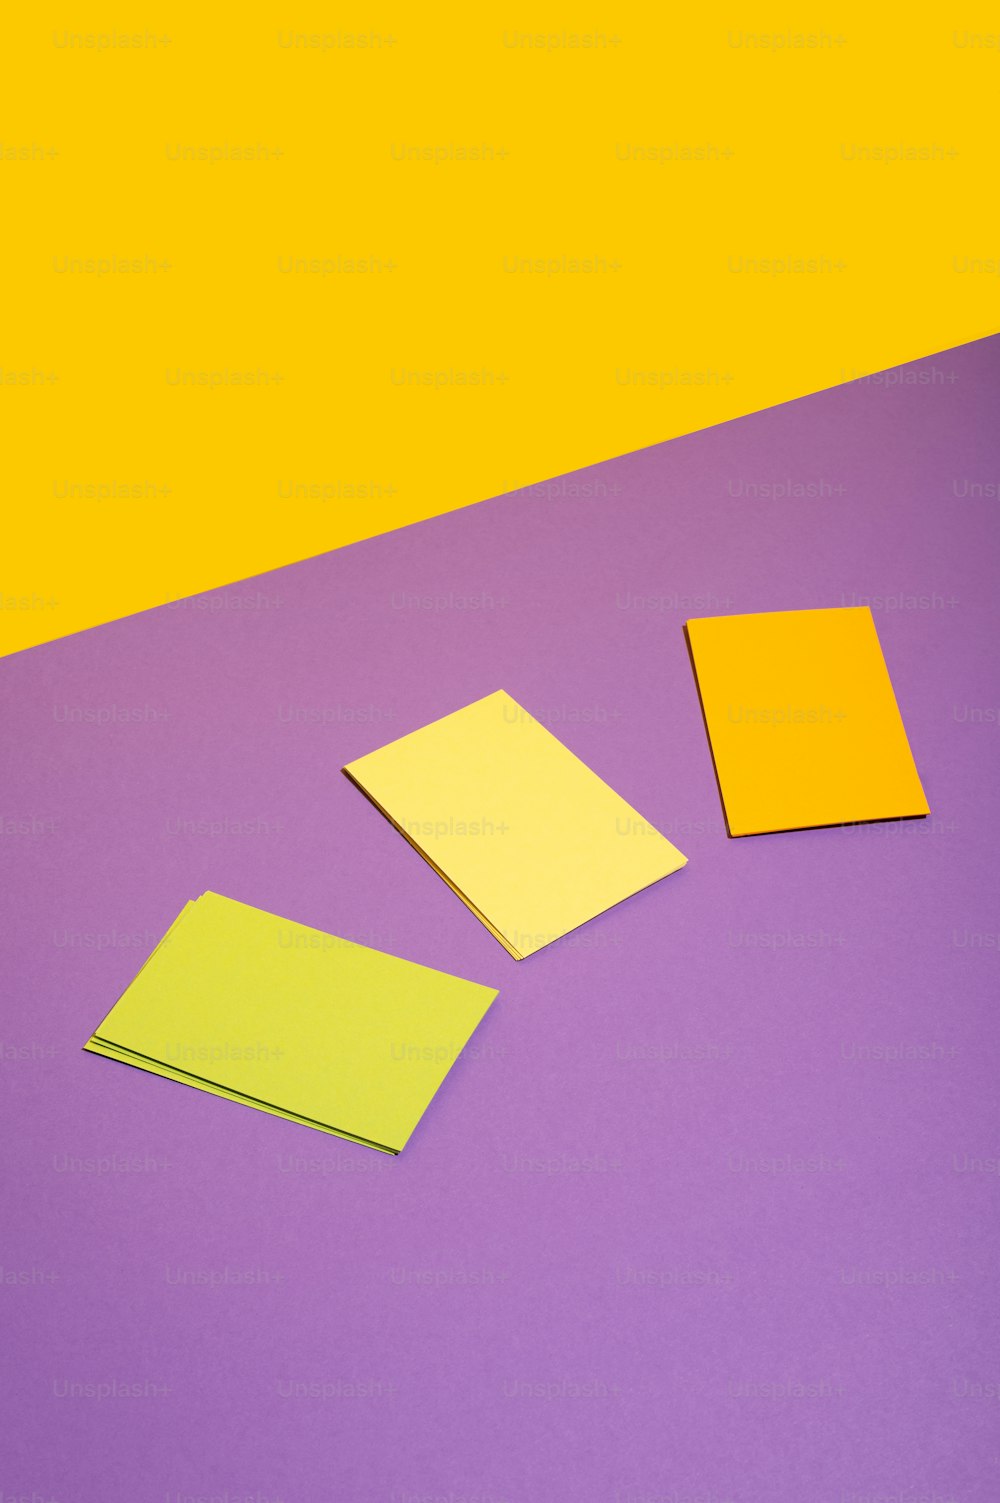 Tre pezzi di carta gialla e viola su sfondo viola e giallo